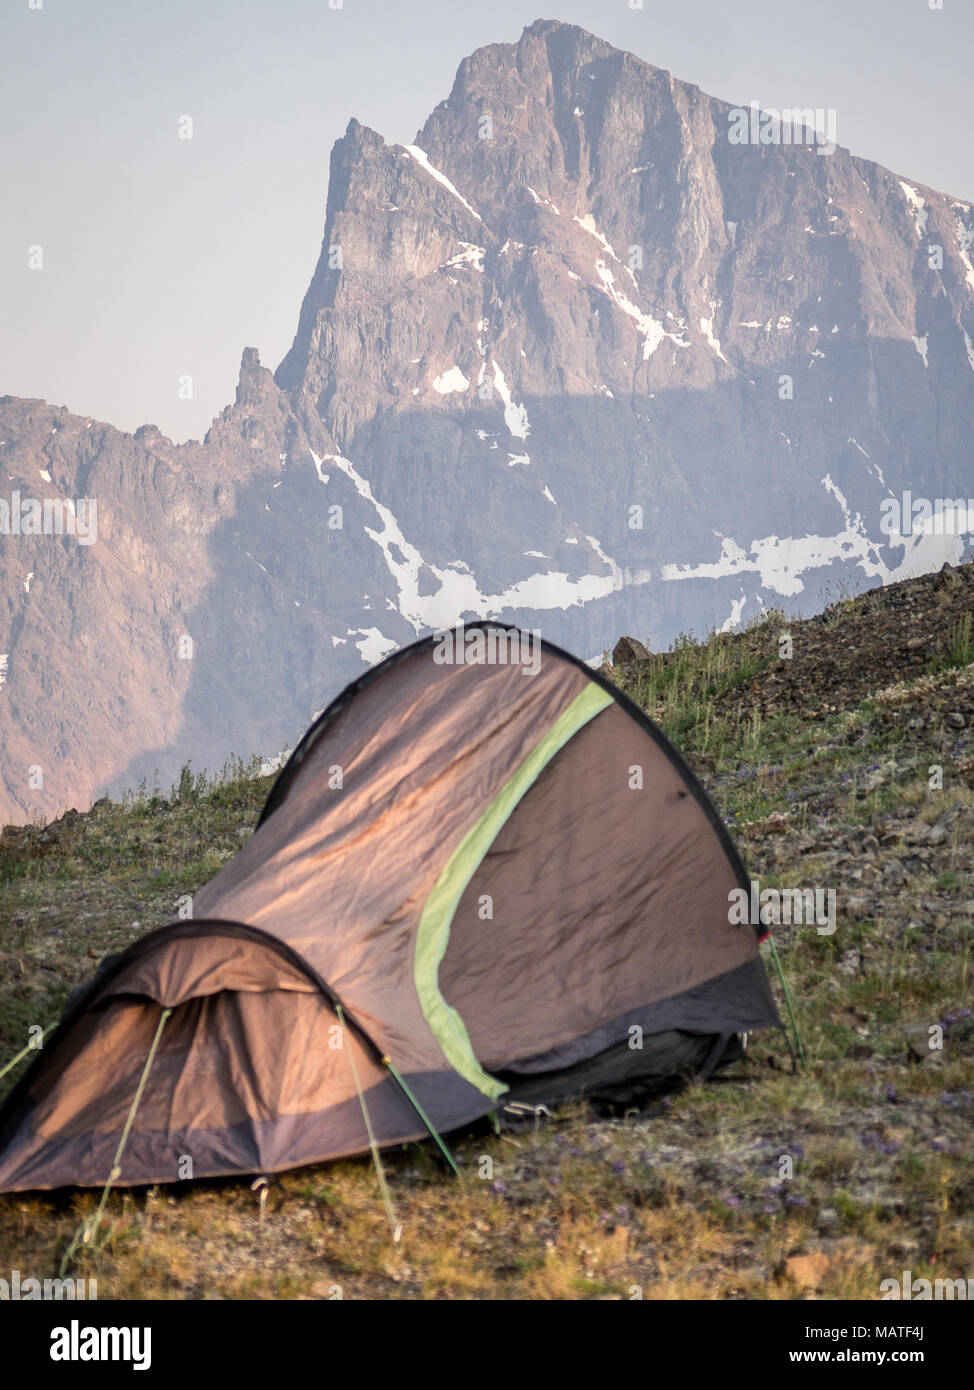 Petite tente et un camping de montagne/alpin dans les montagnes côtières de la Colombie-Britannique (Canada). Majestueux pic de montagne dans l'arrière-plan. Banque D'Images